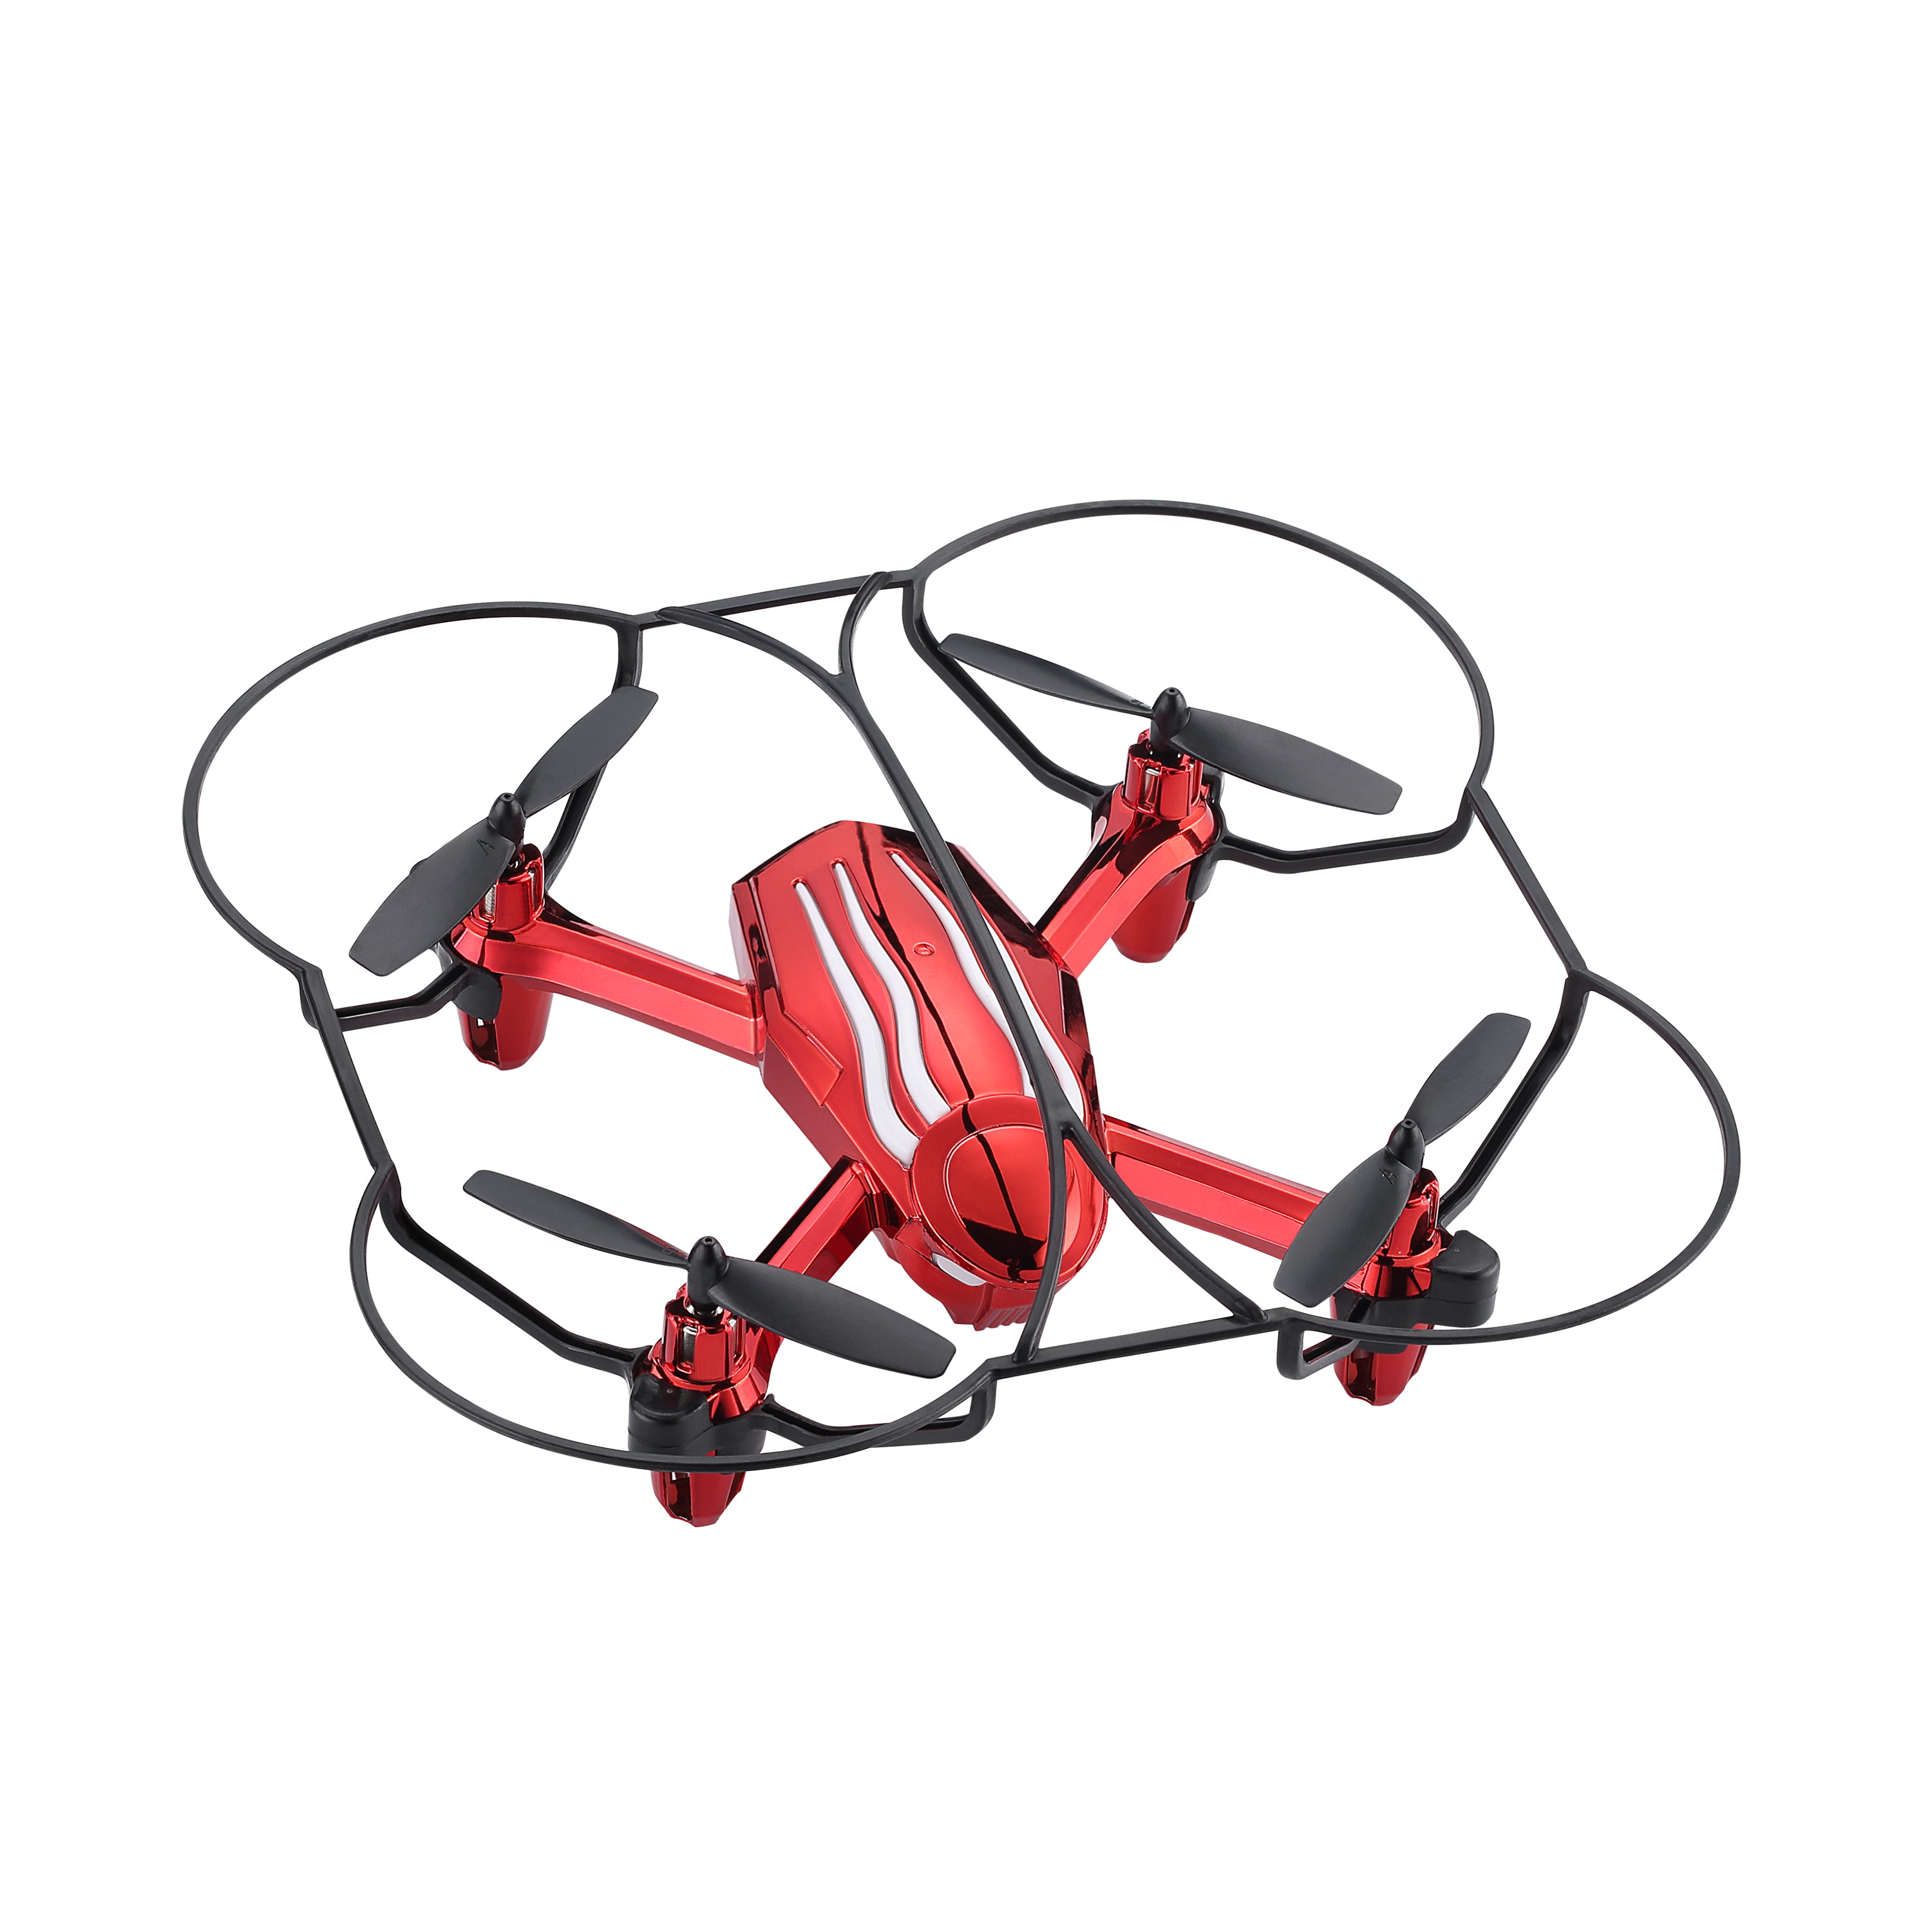 propel x03 drone